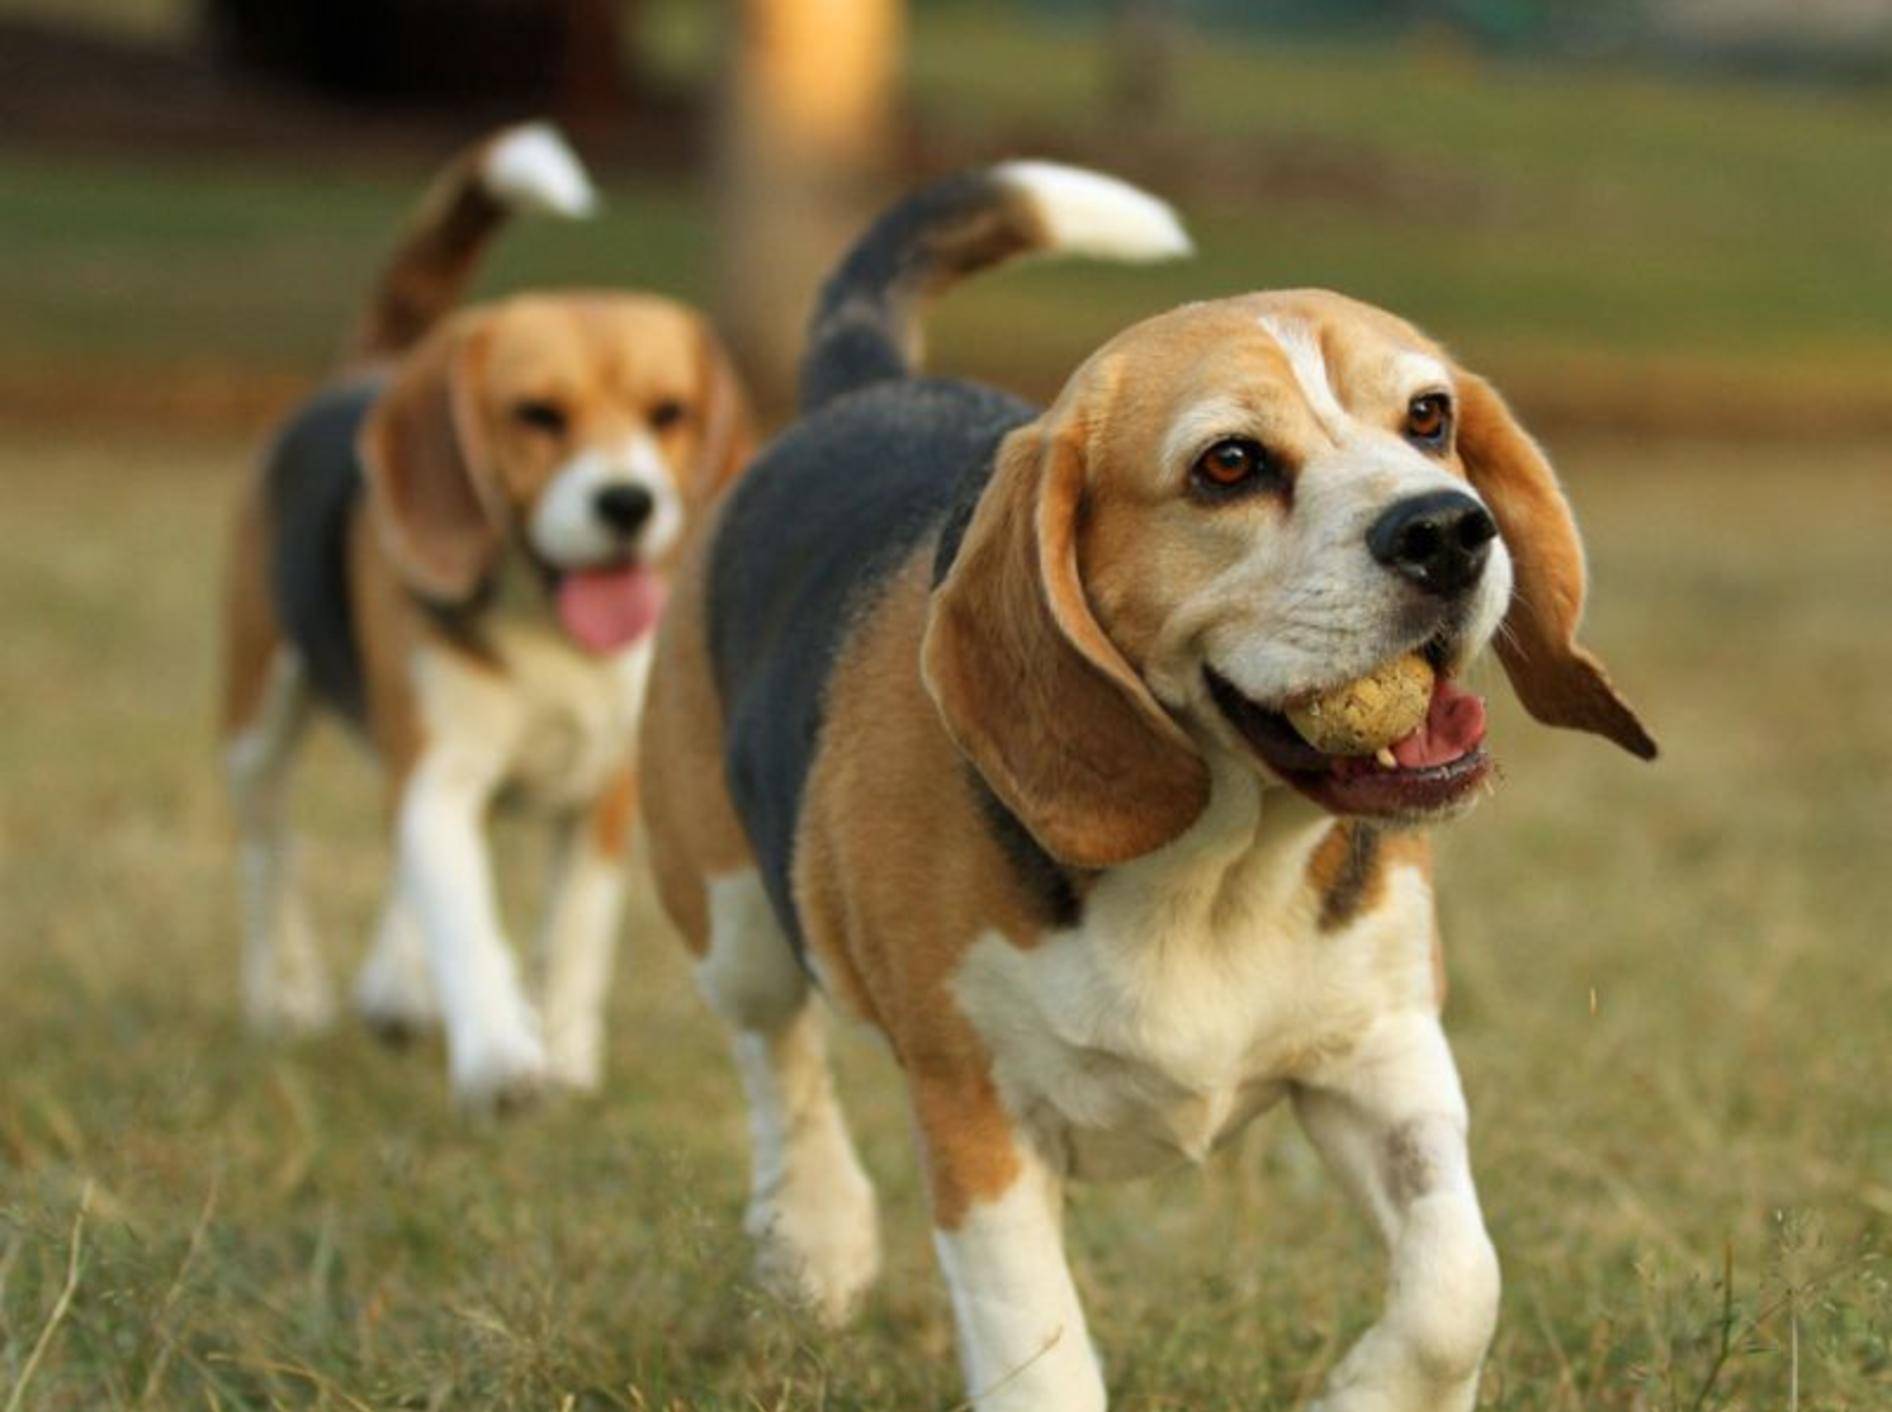 Der Beagle: Ein kleiner Hund, der sich in Gesellschaft am wohlsten fühlt — Bild: Shutterstock / Ross Stevenson